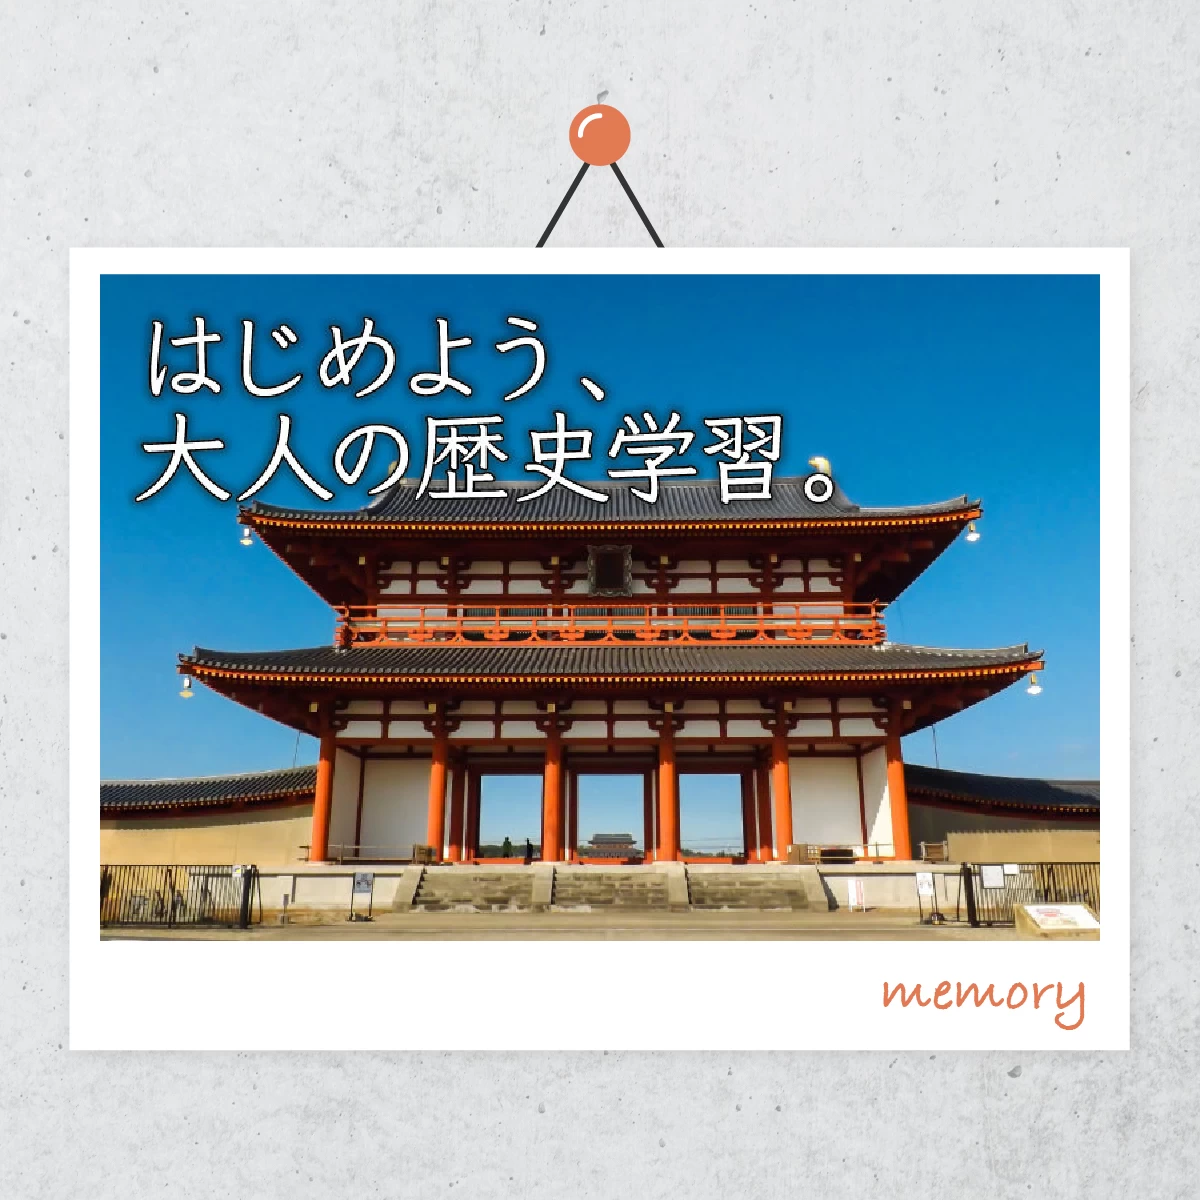 1泊2日で京都・奈良へ  大人の修学旅行